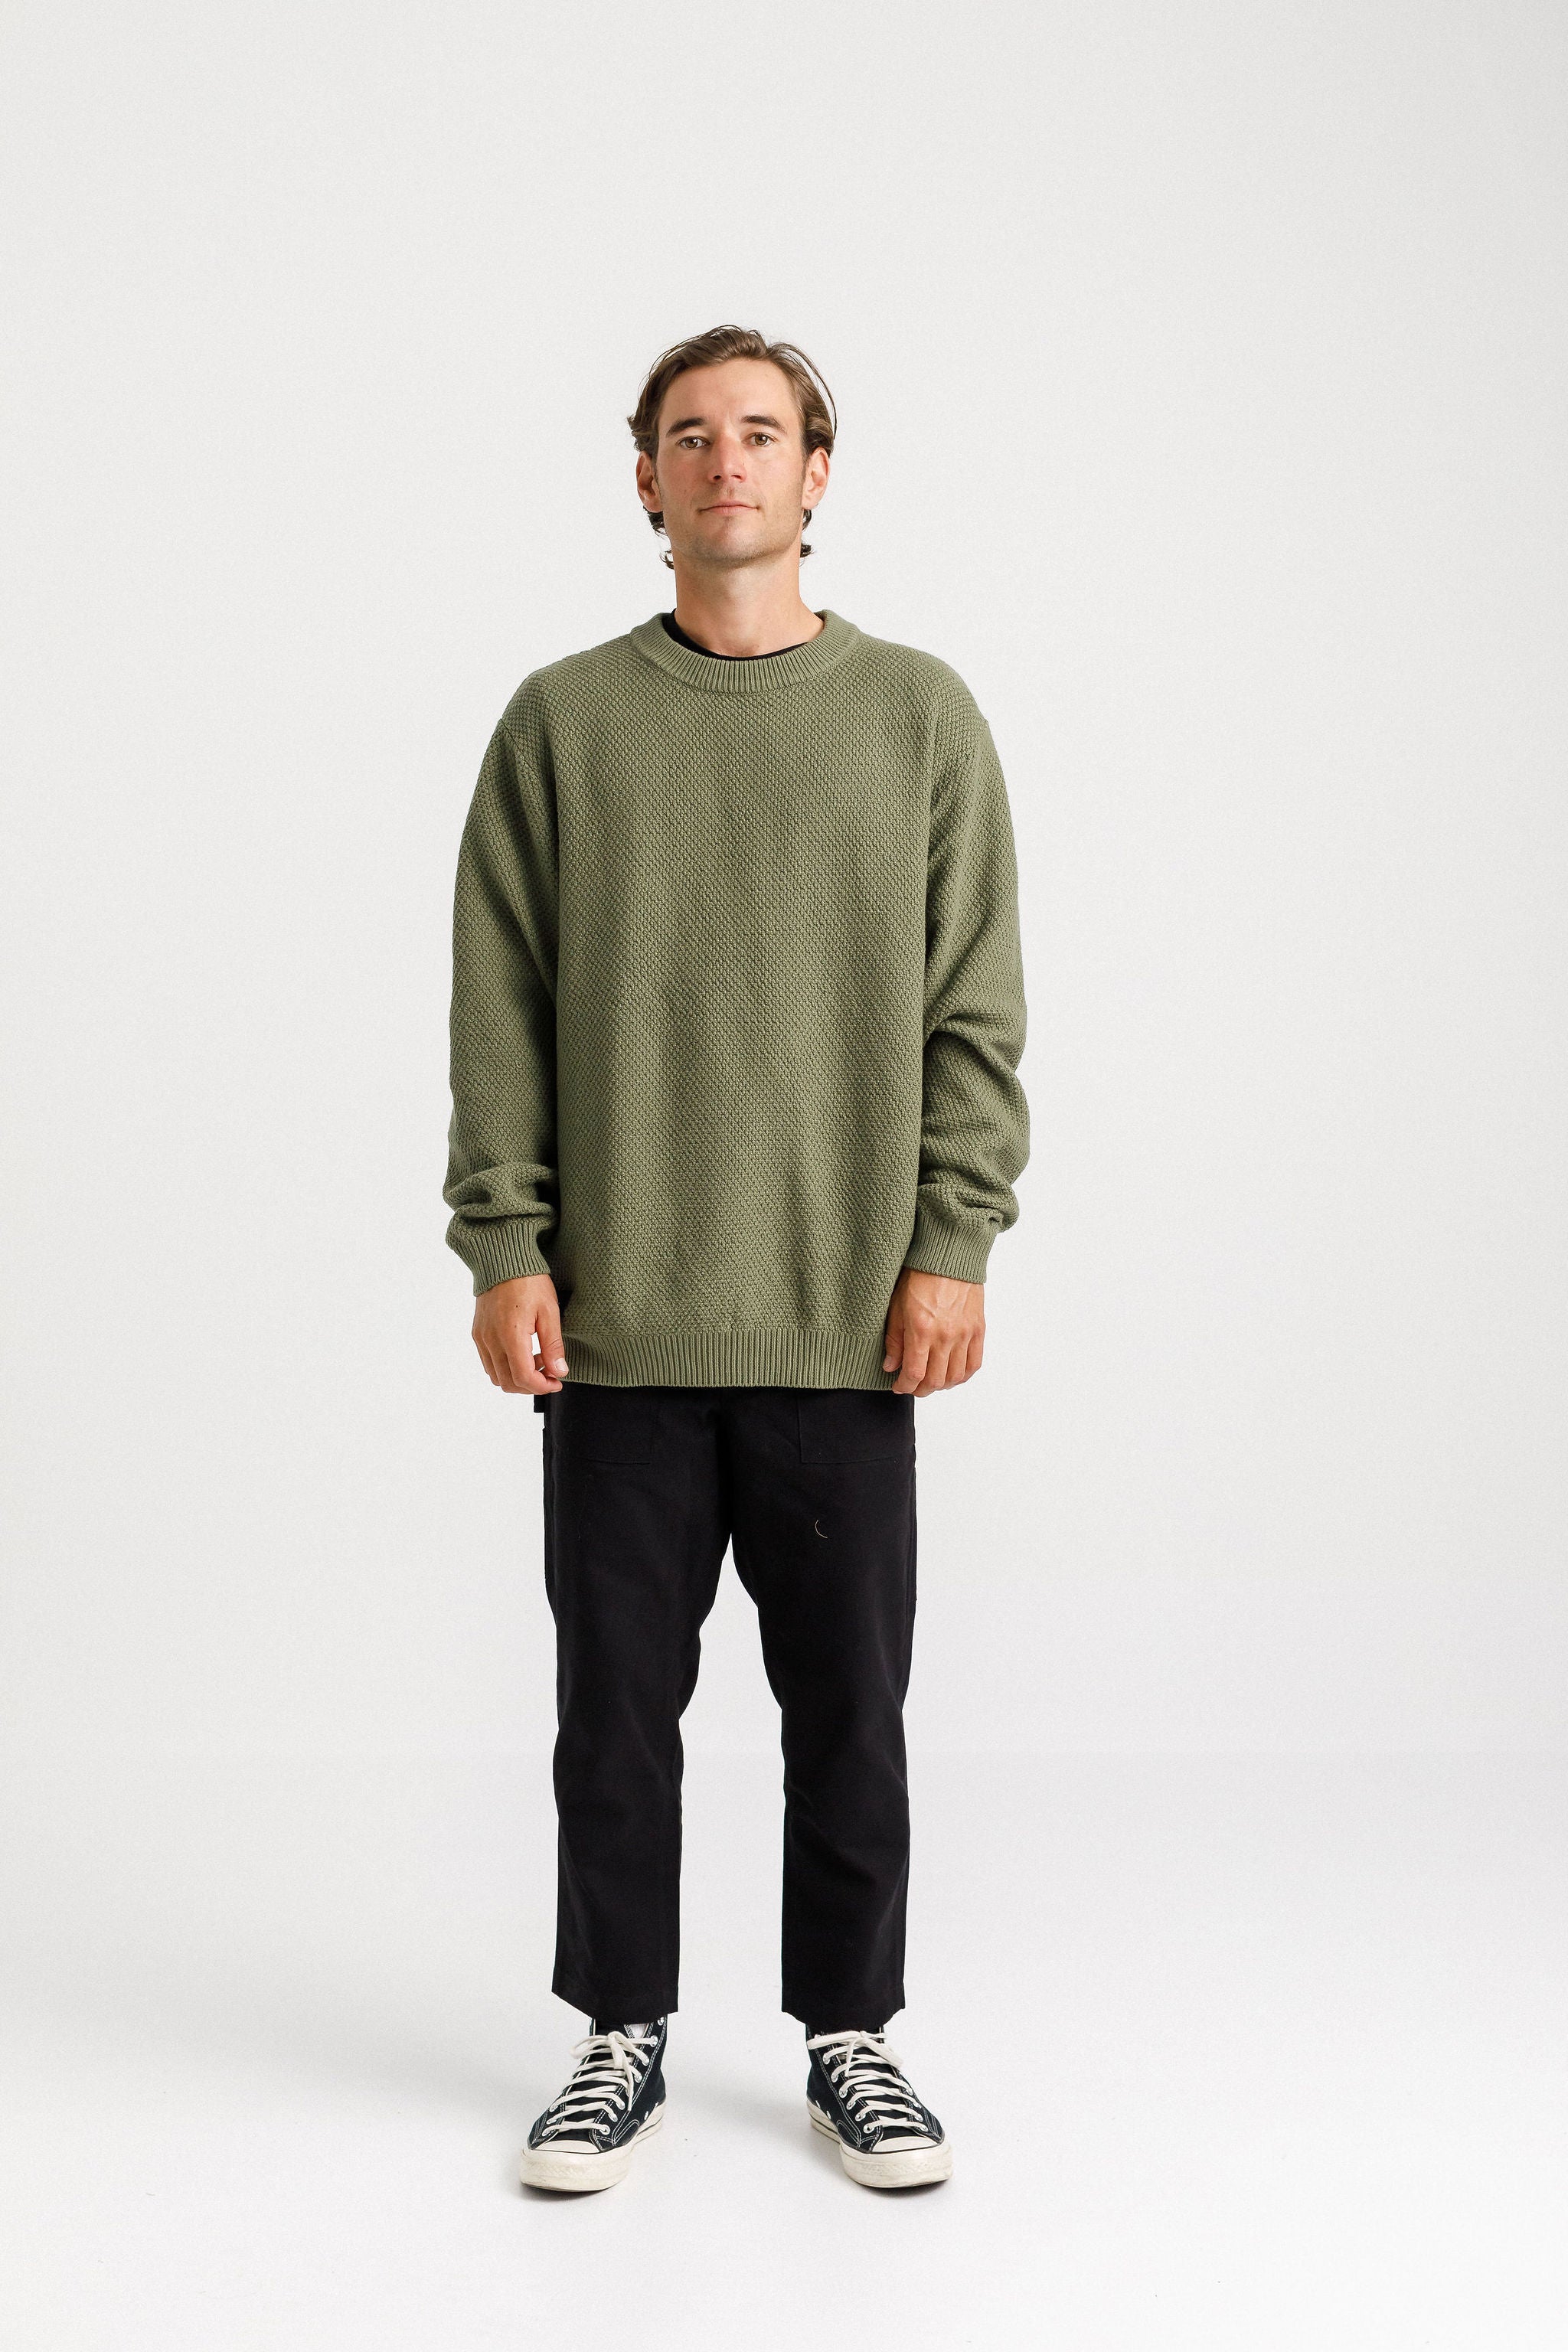 Attic Sweater - Sale - Olive